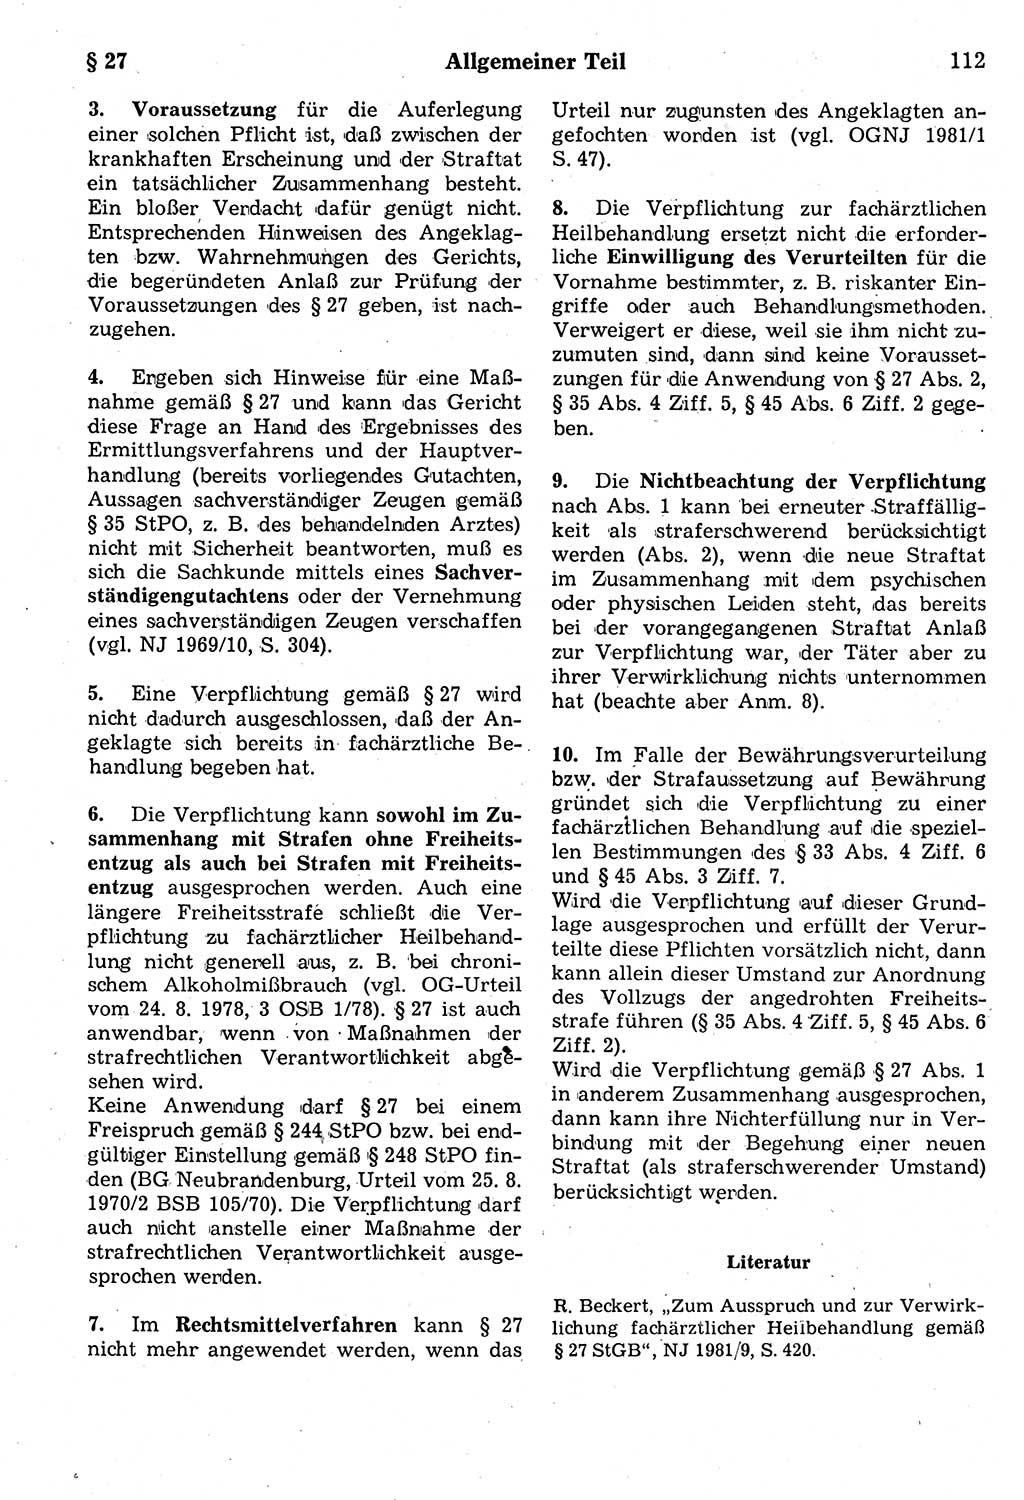 Strafrecht der Deutschen Demokratischen Republik (DDR), Kommentar zum Strafgesetzbuch (StGB) 1987, Seite 112 (Strafr. DDR Komm. StGB 1987, S. 112)